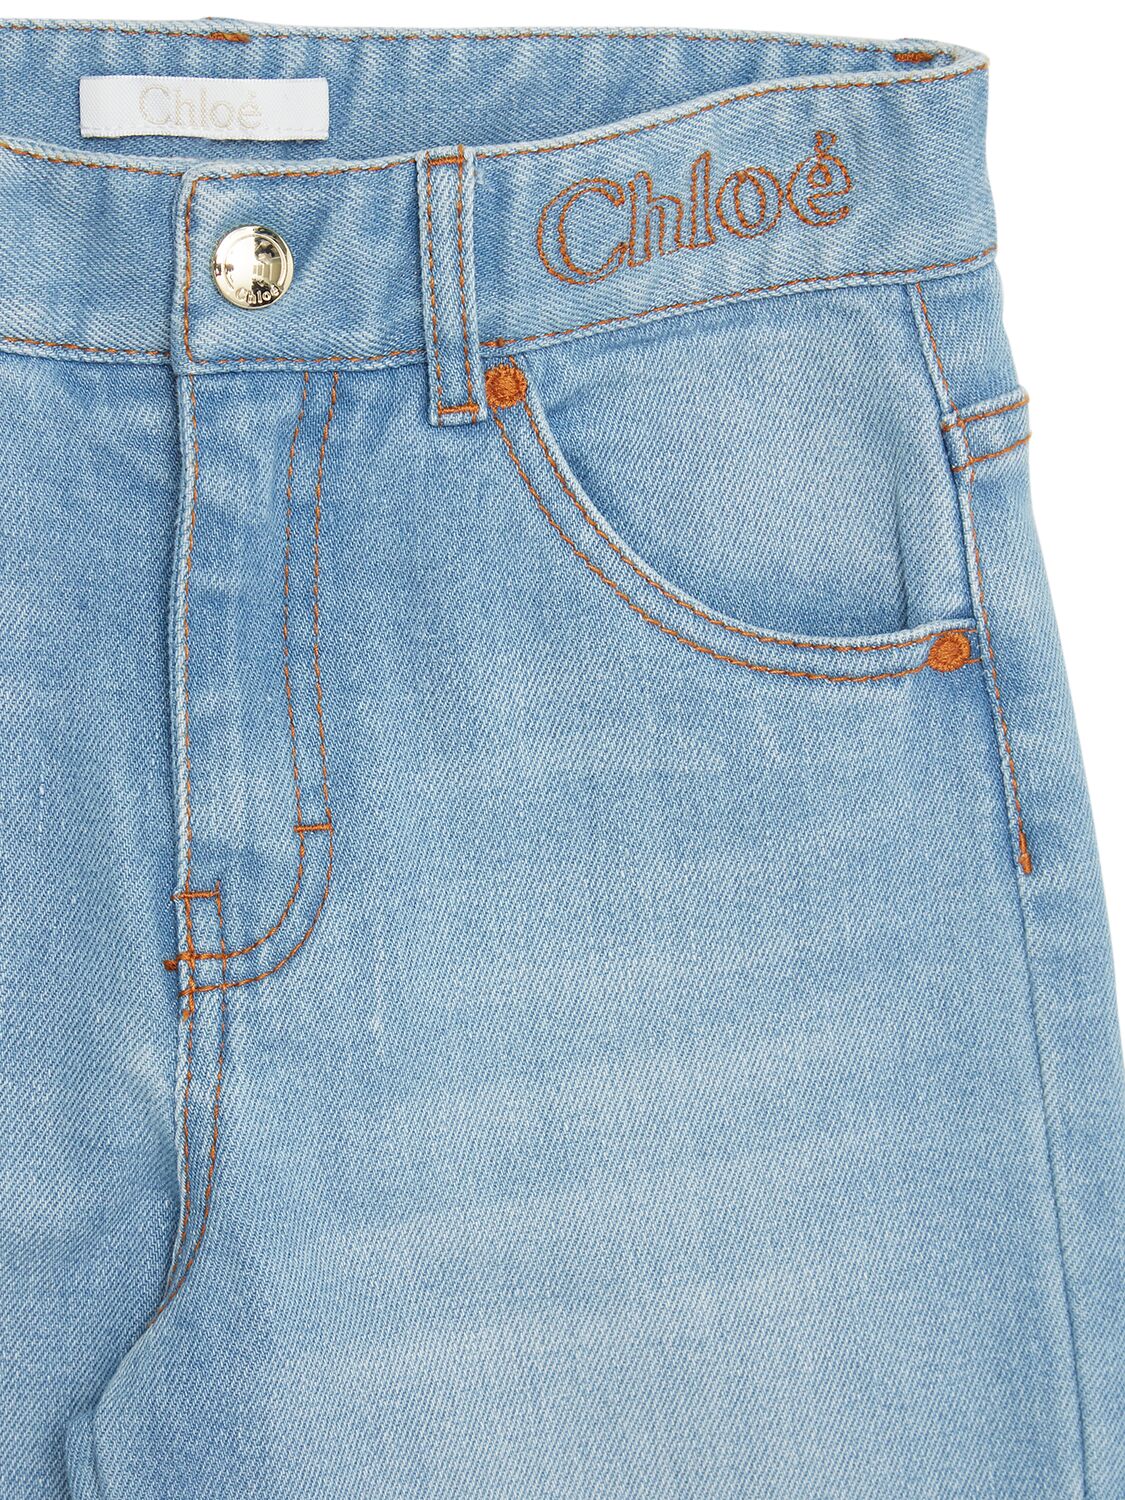 Shop Chloé Denim Jeans